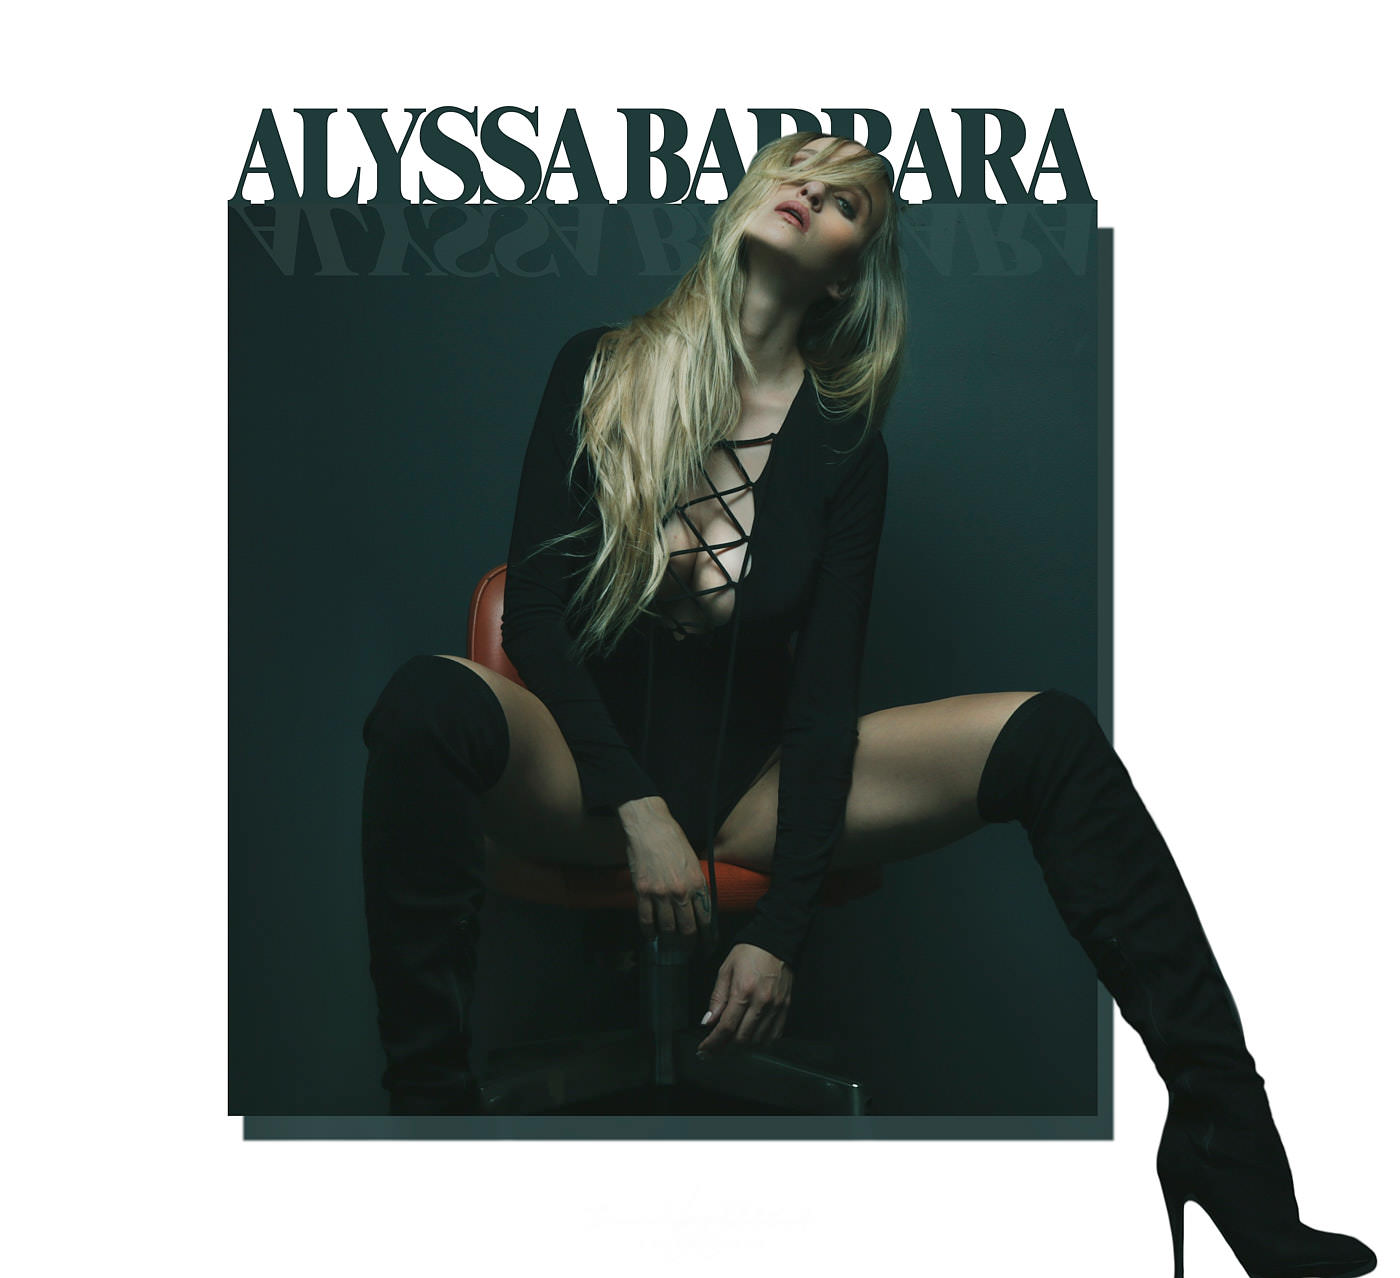 Alyssa barbara instagram